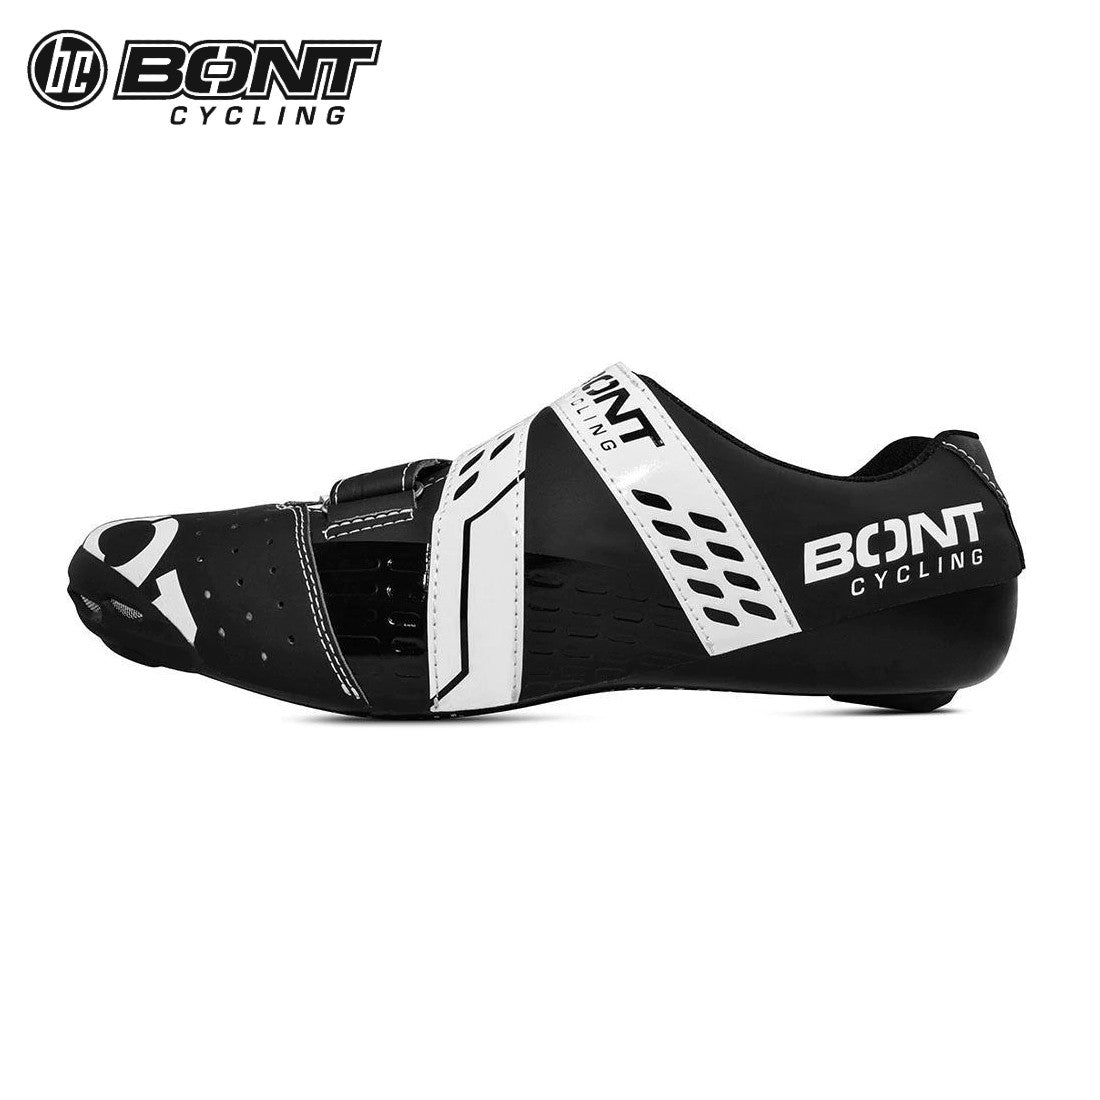 Bont RIOT+ Carbon Composite / BOA Cycling Shoes - Black/White